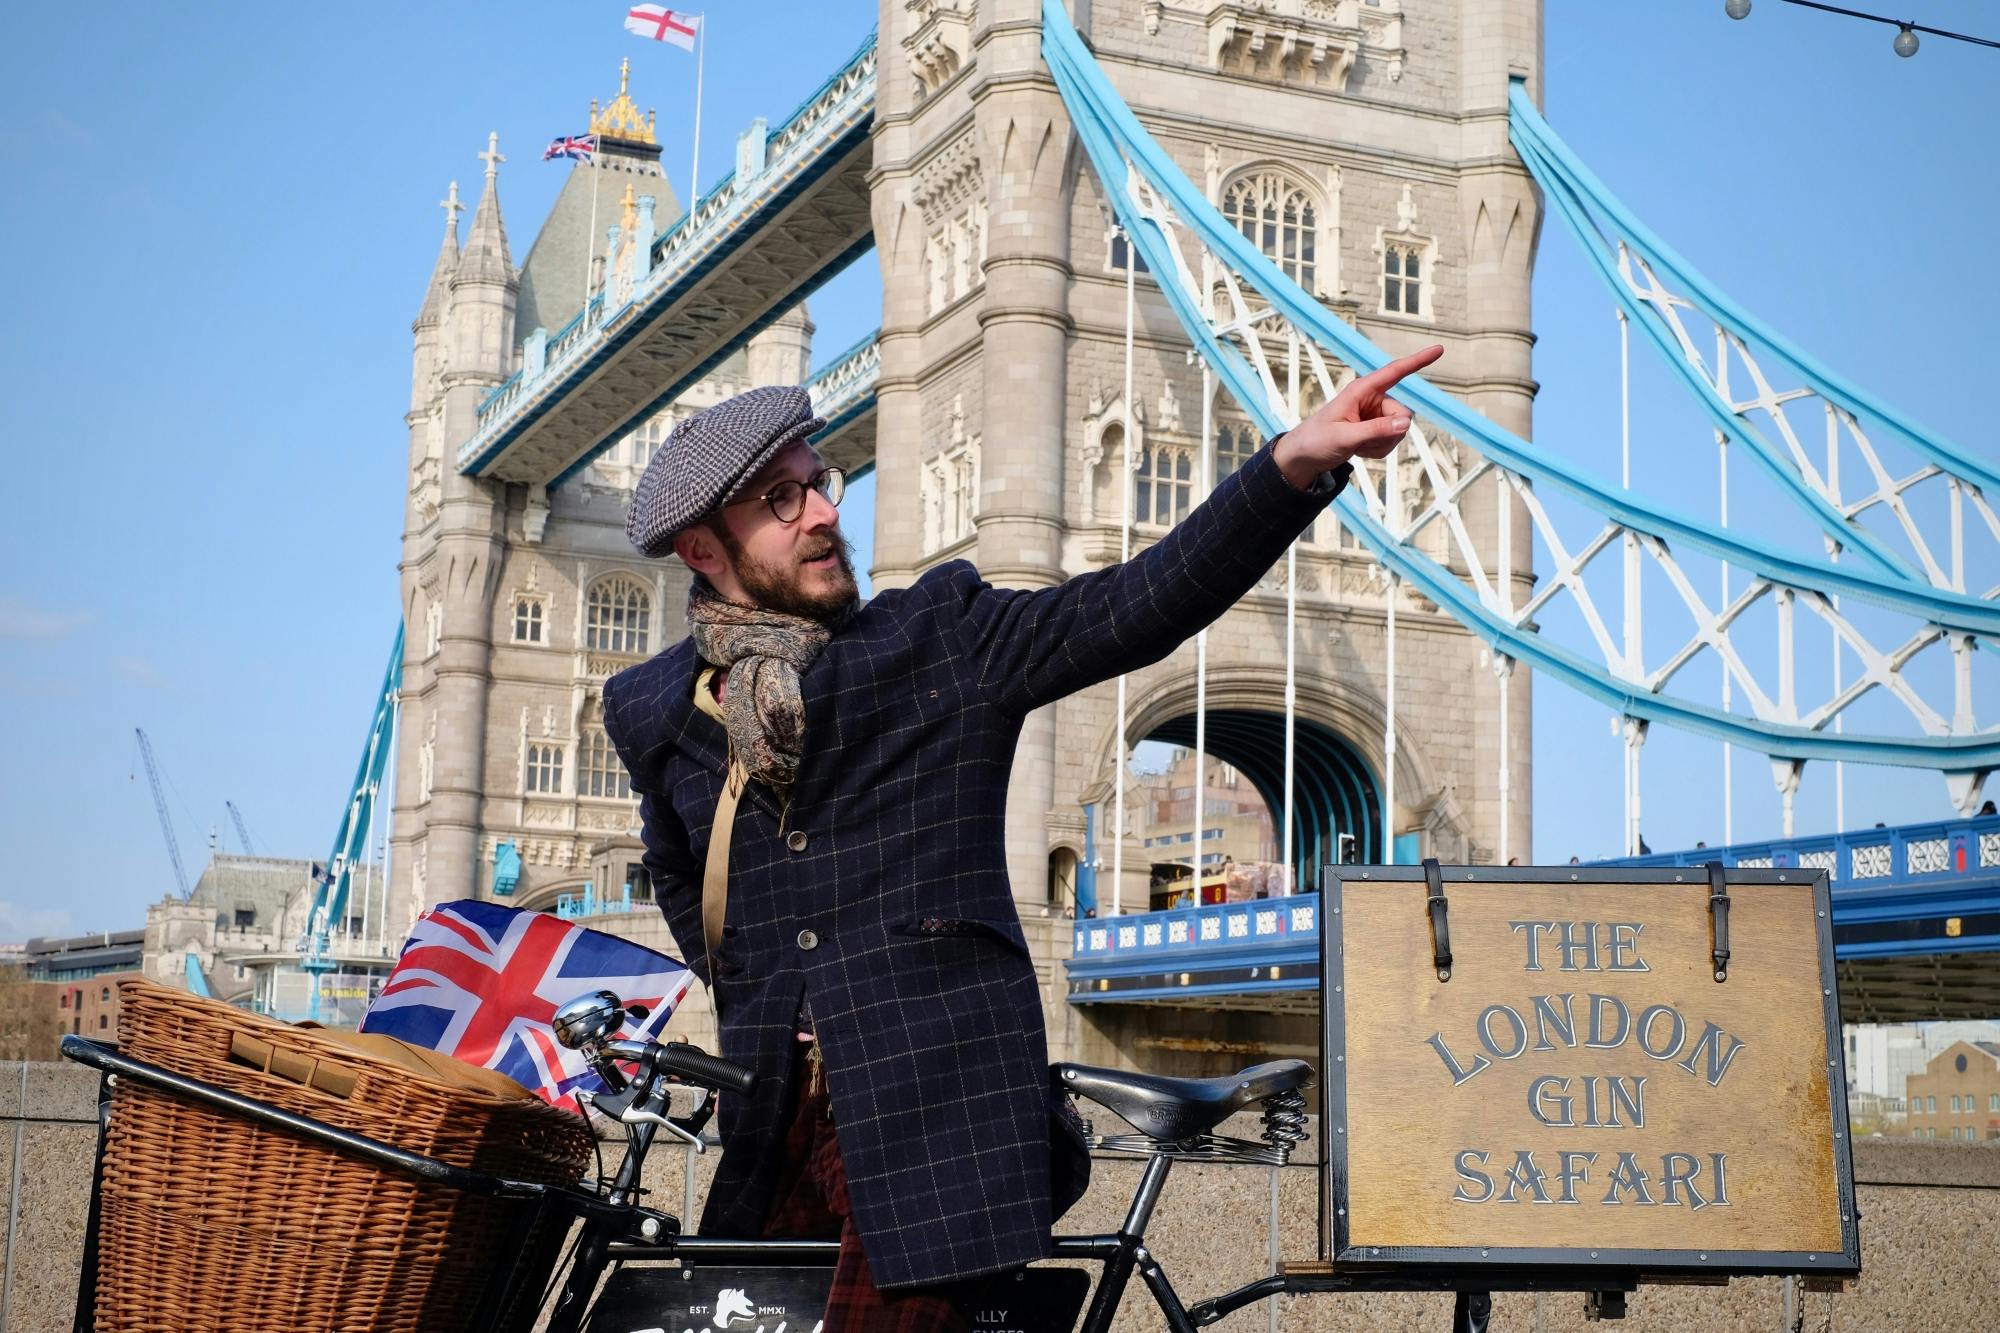 Passeio guiado de bicicleta "London gin safari" com degustação de gin